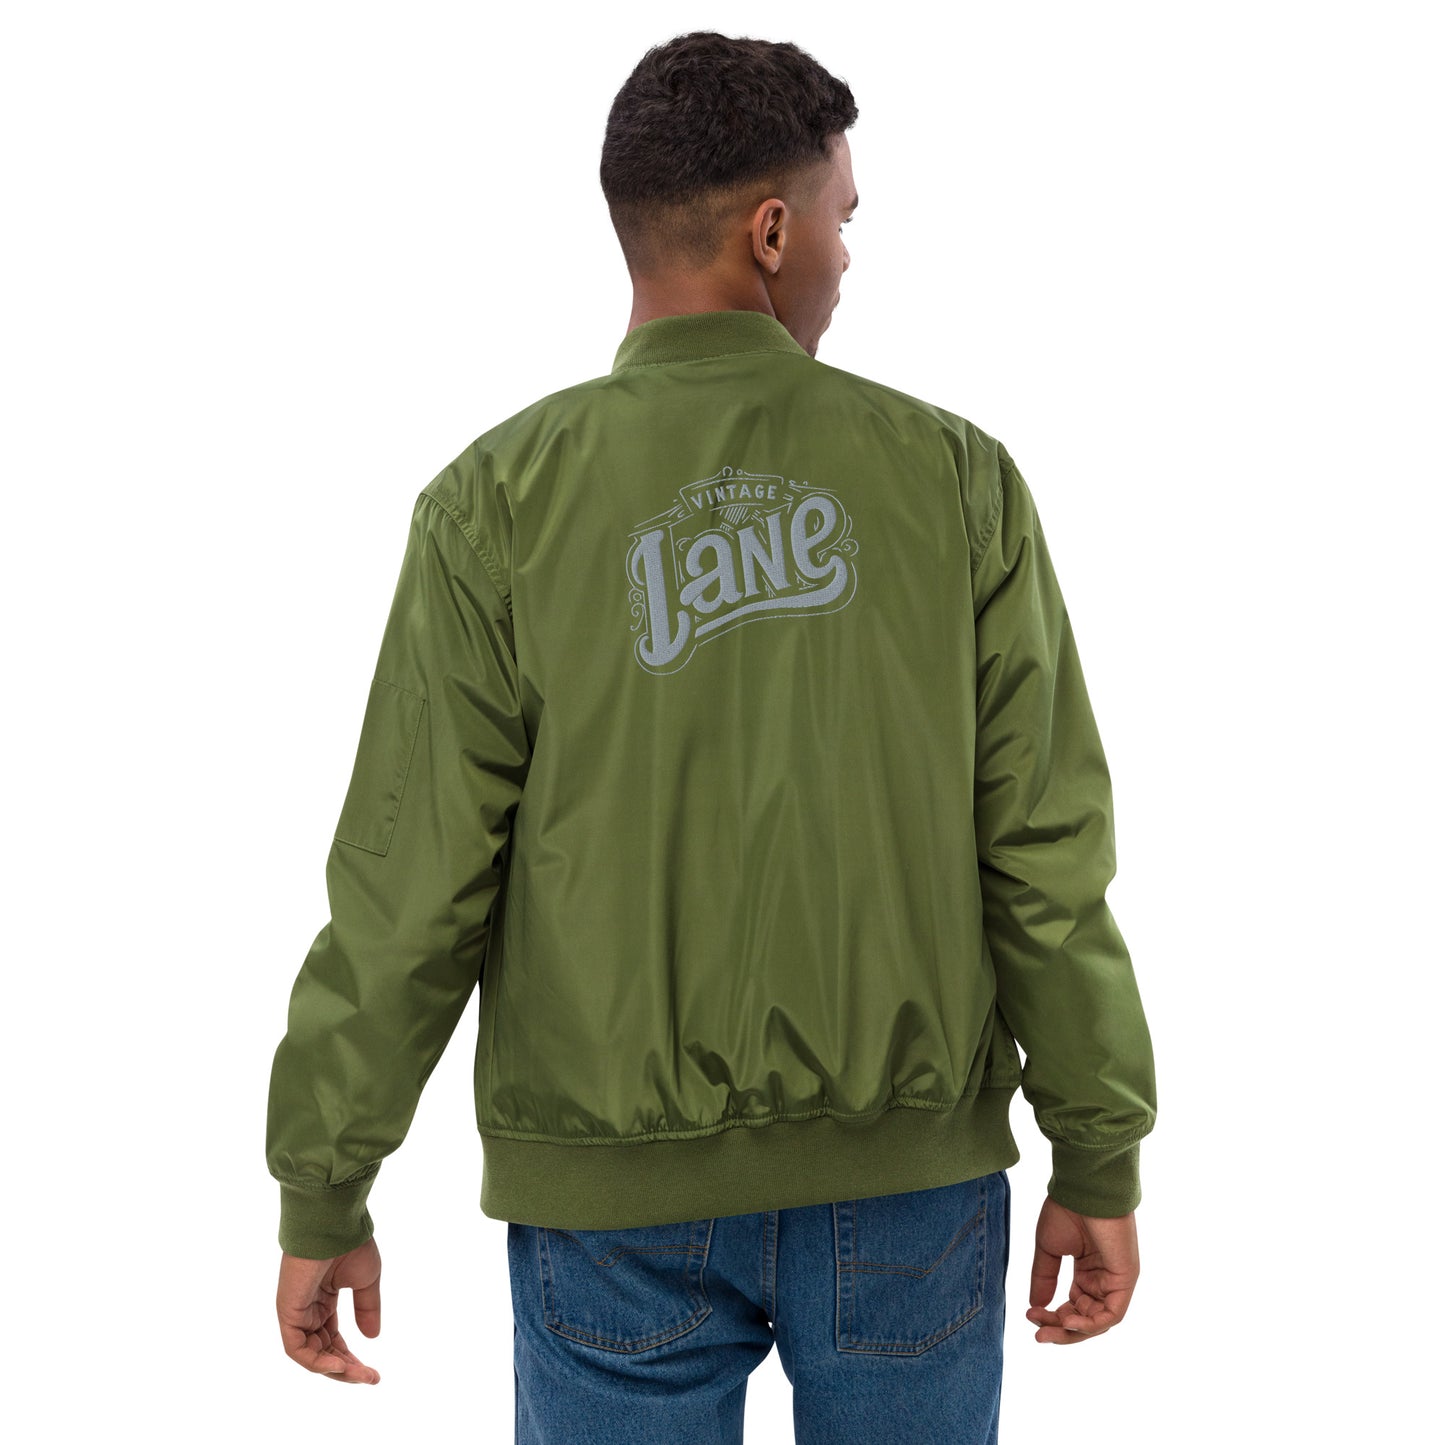 Vintage Lane embroider  bomber jacket